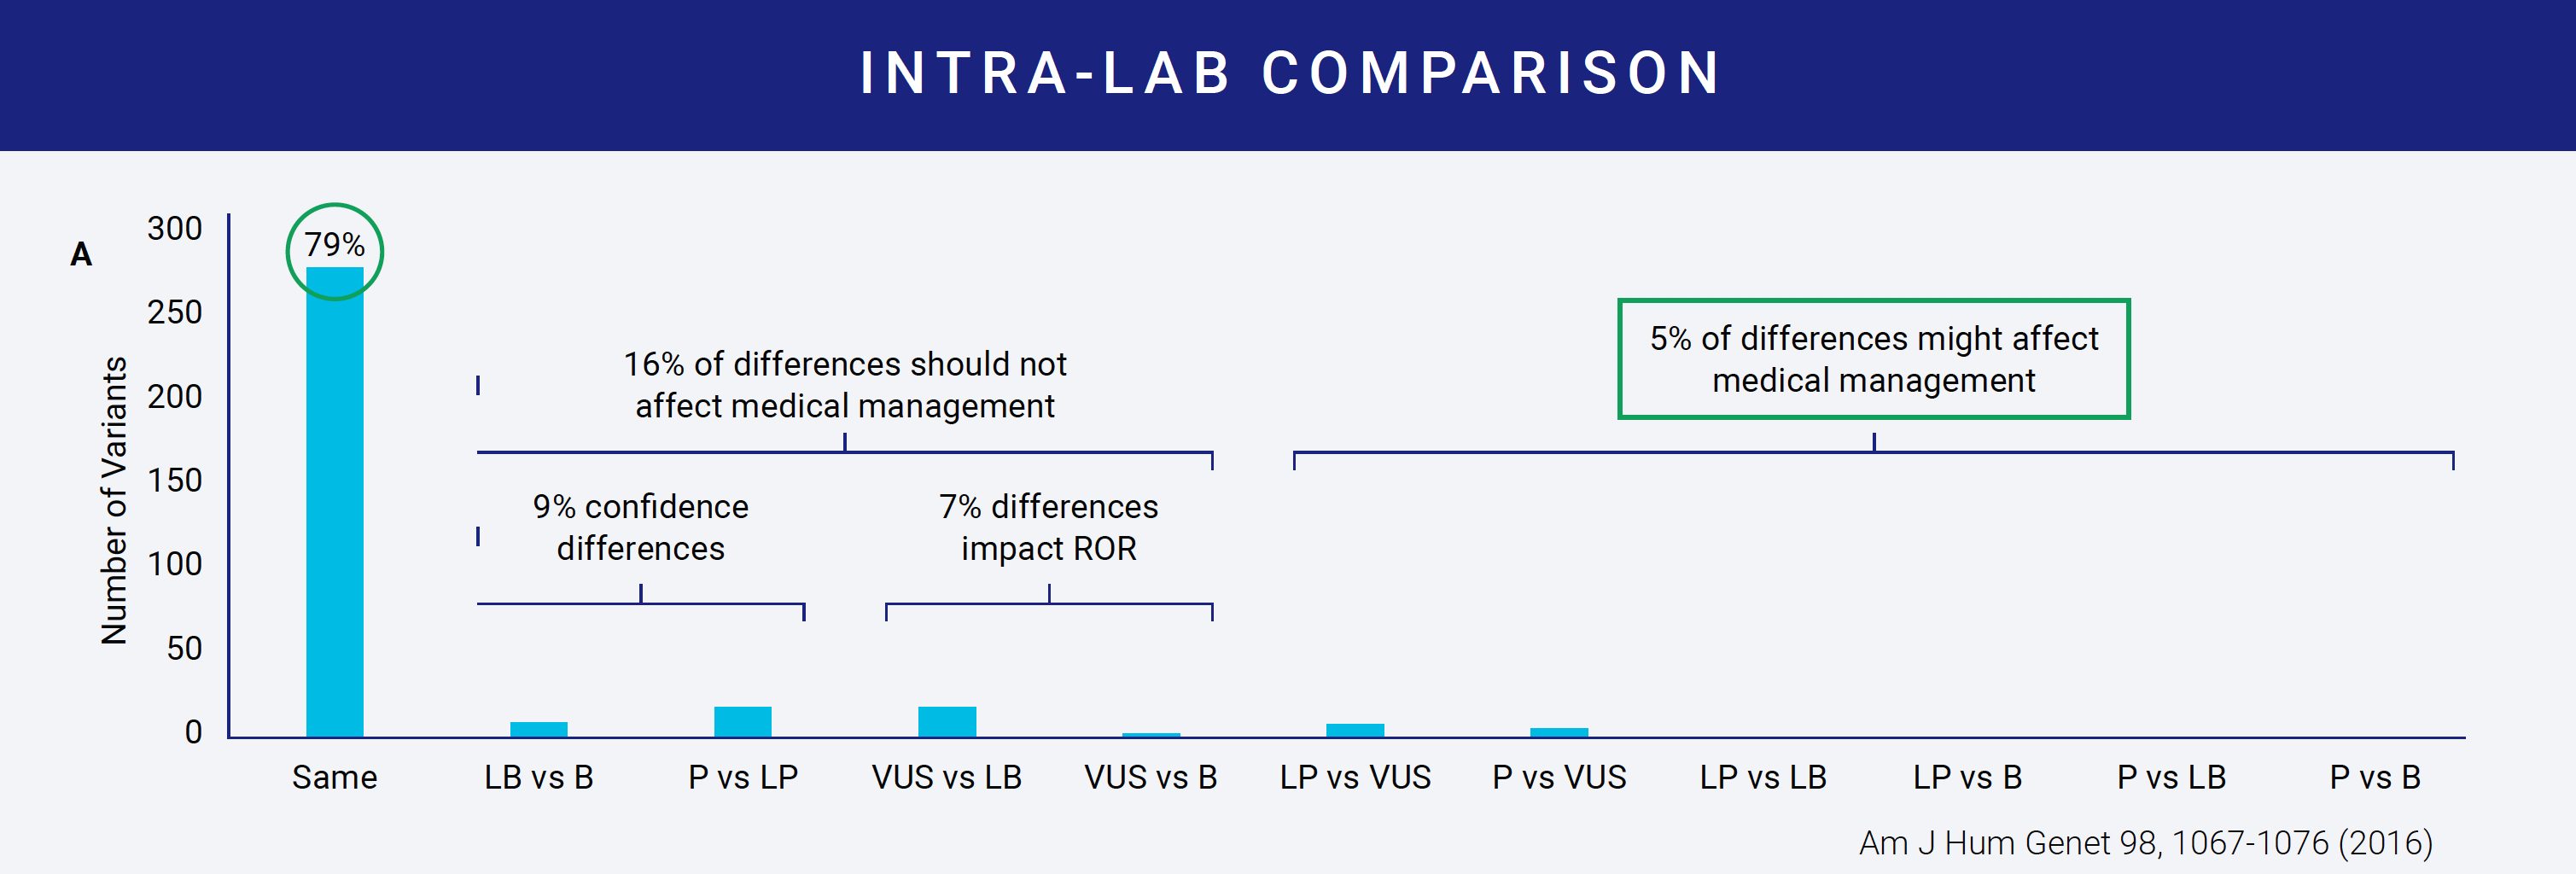 Intra-lab comparison